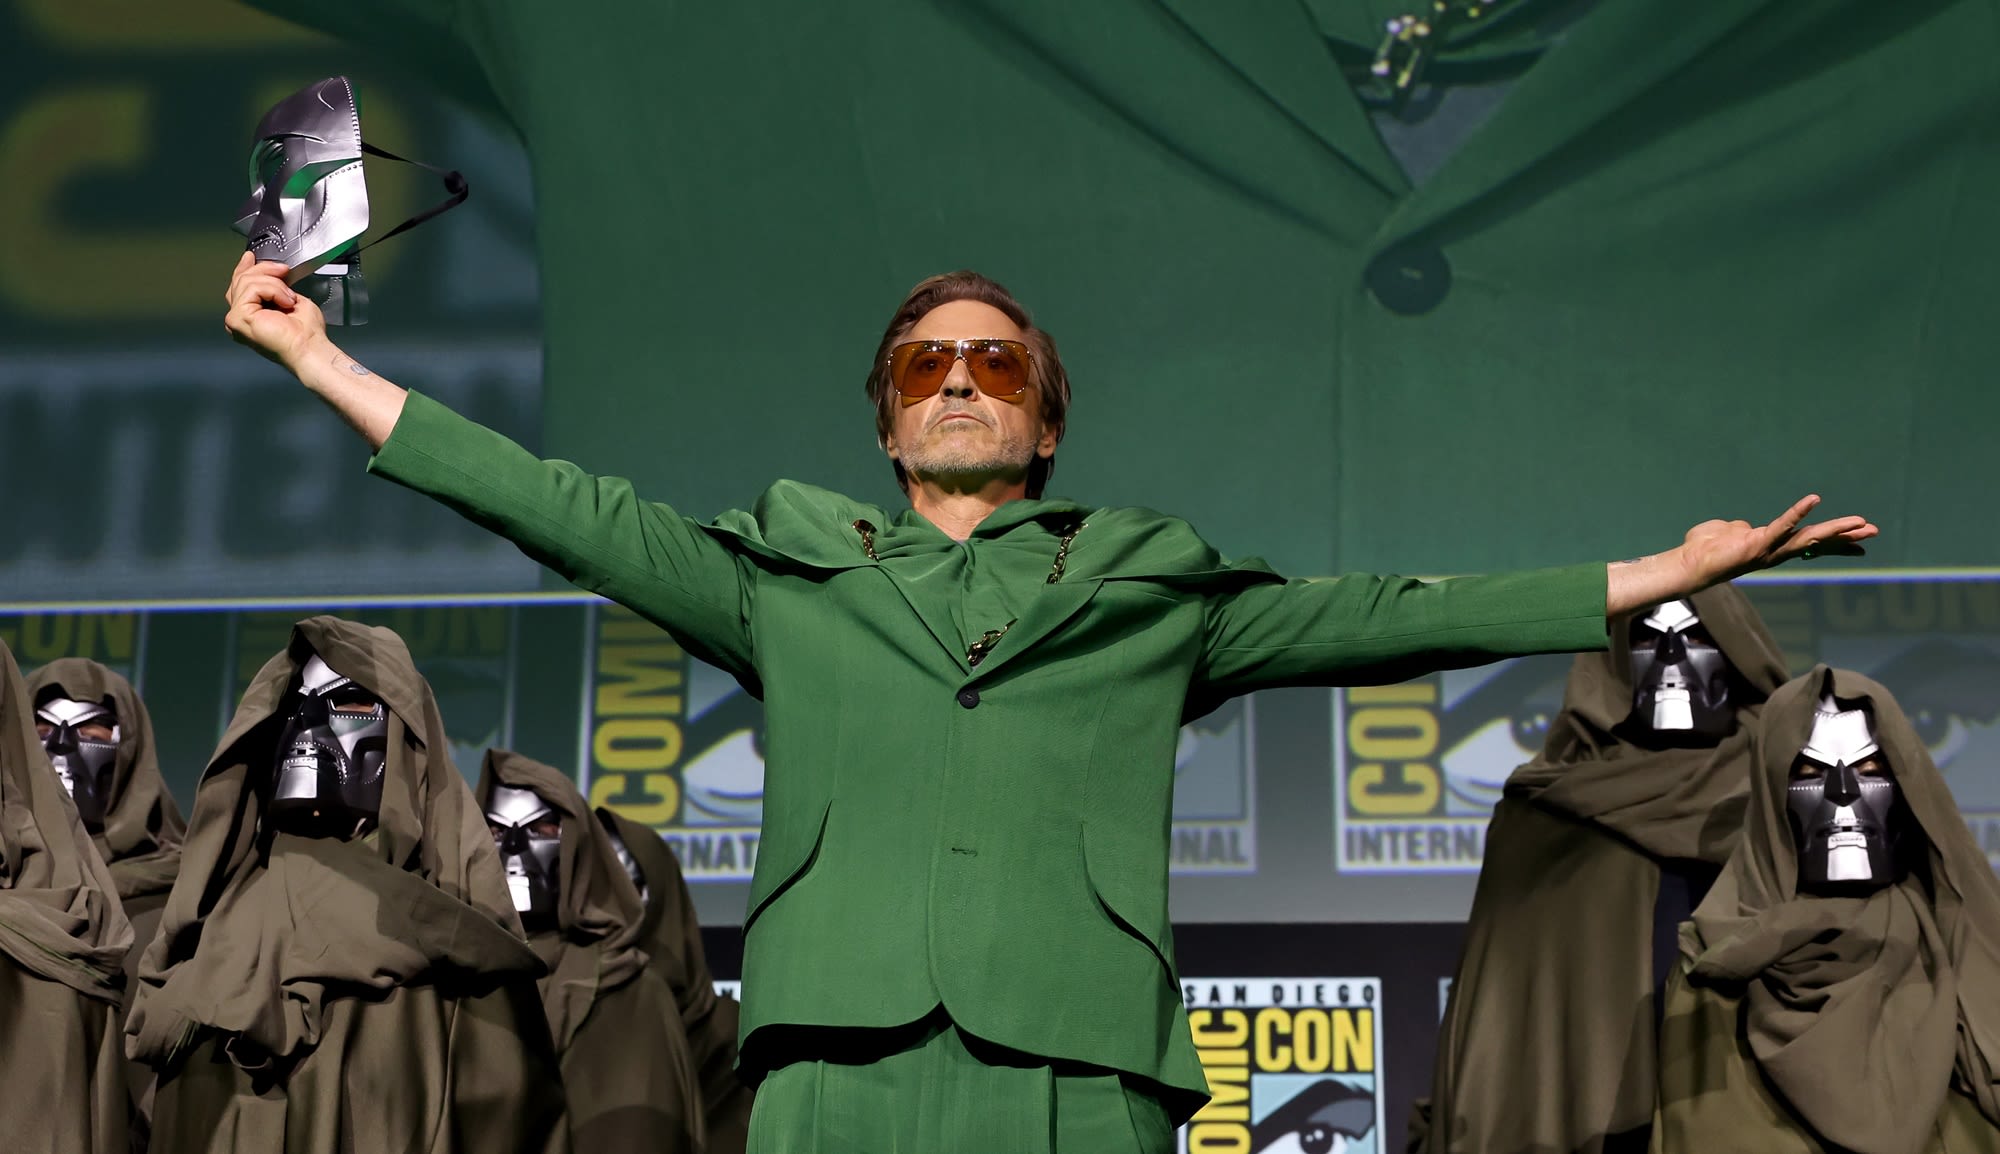 Robert Downey Jr.'s Doctor Doom will debut in the MCU before Avengers: Doomsday